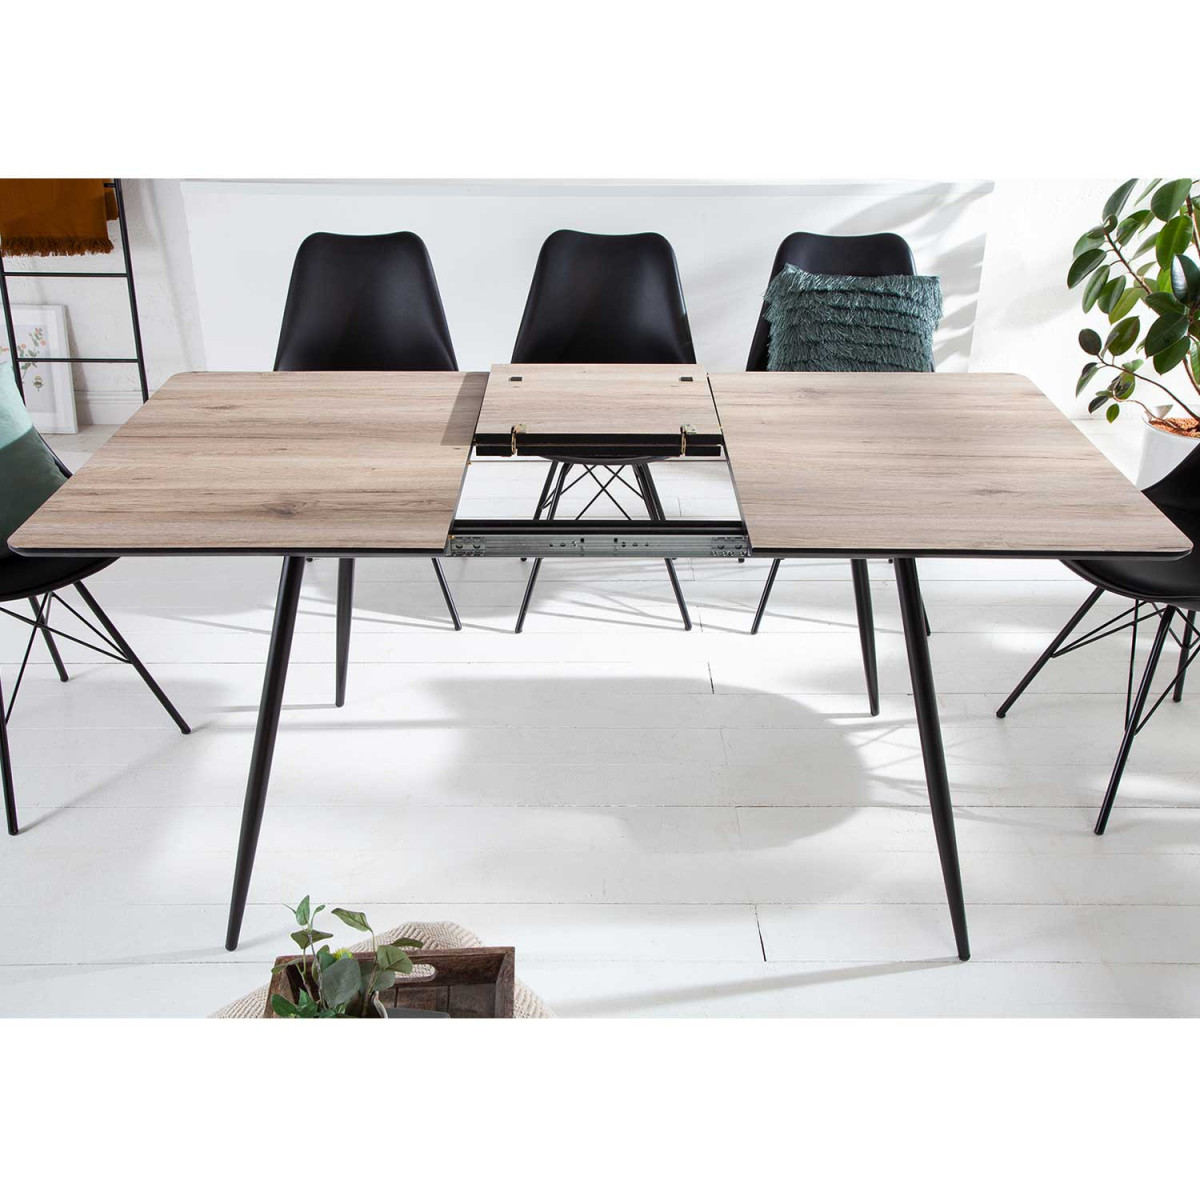 Table à manger extensible rallonges intégrées couleur chêne et noir -  Cbc-Meubles